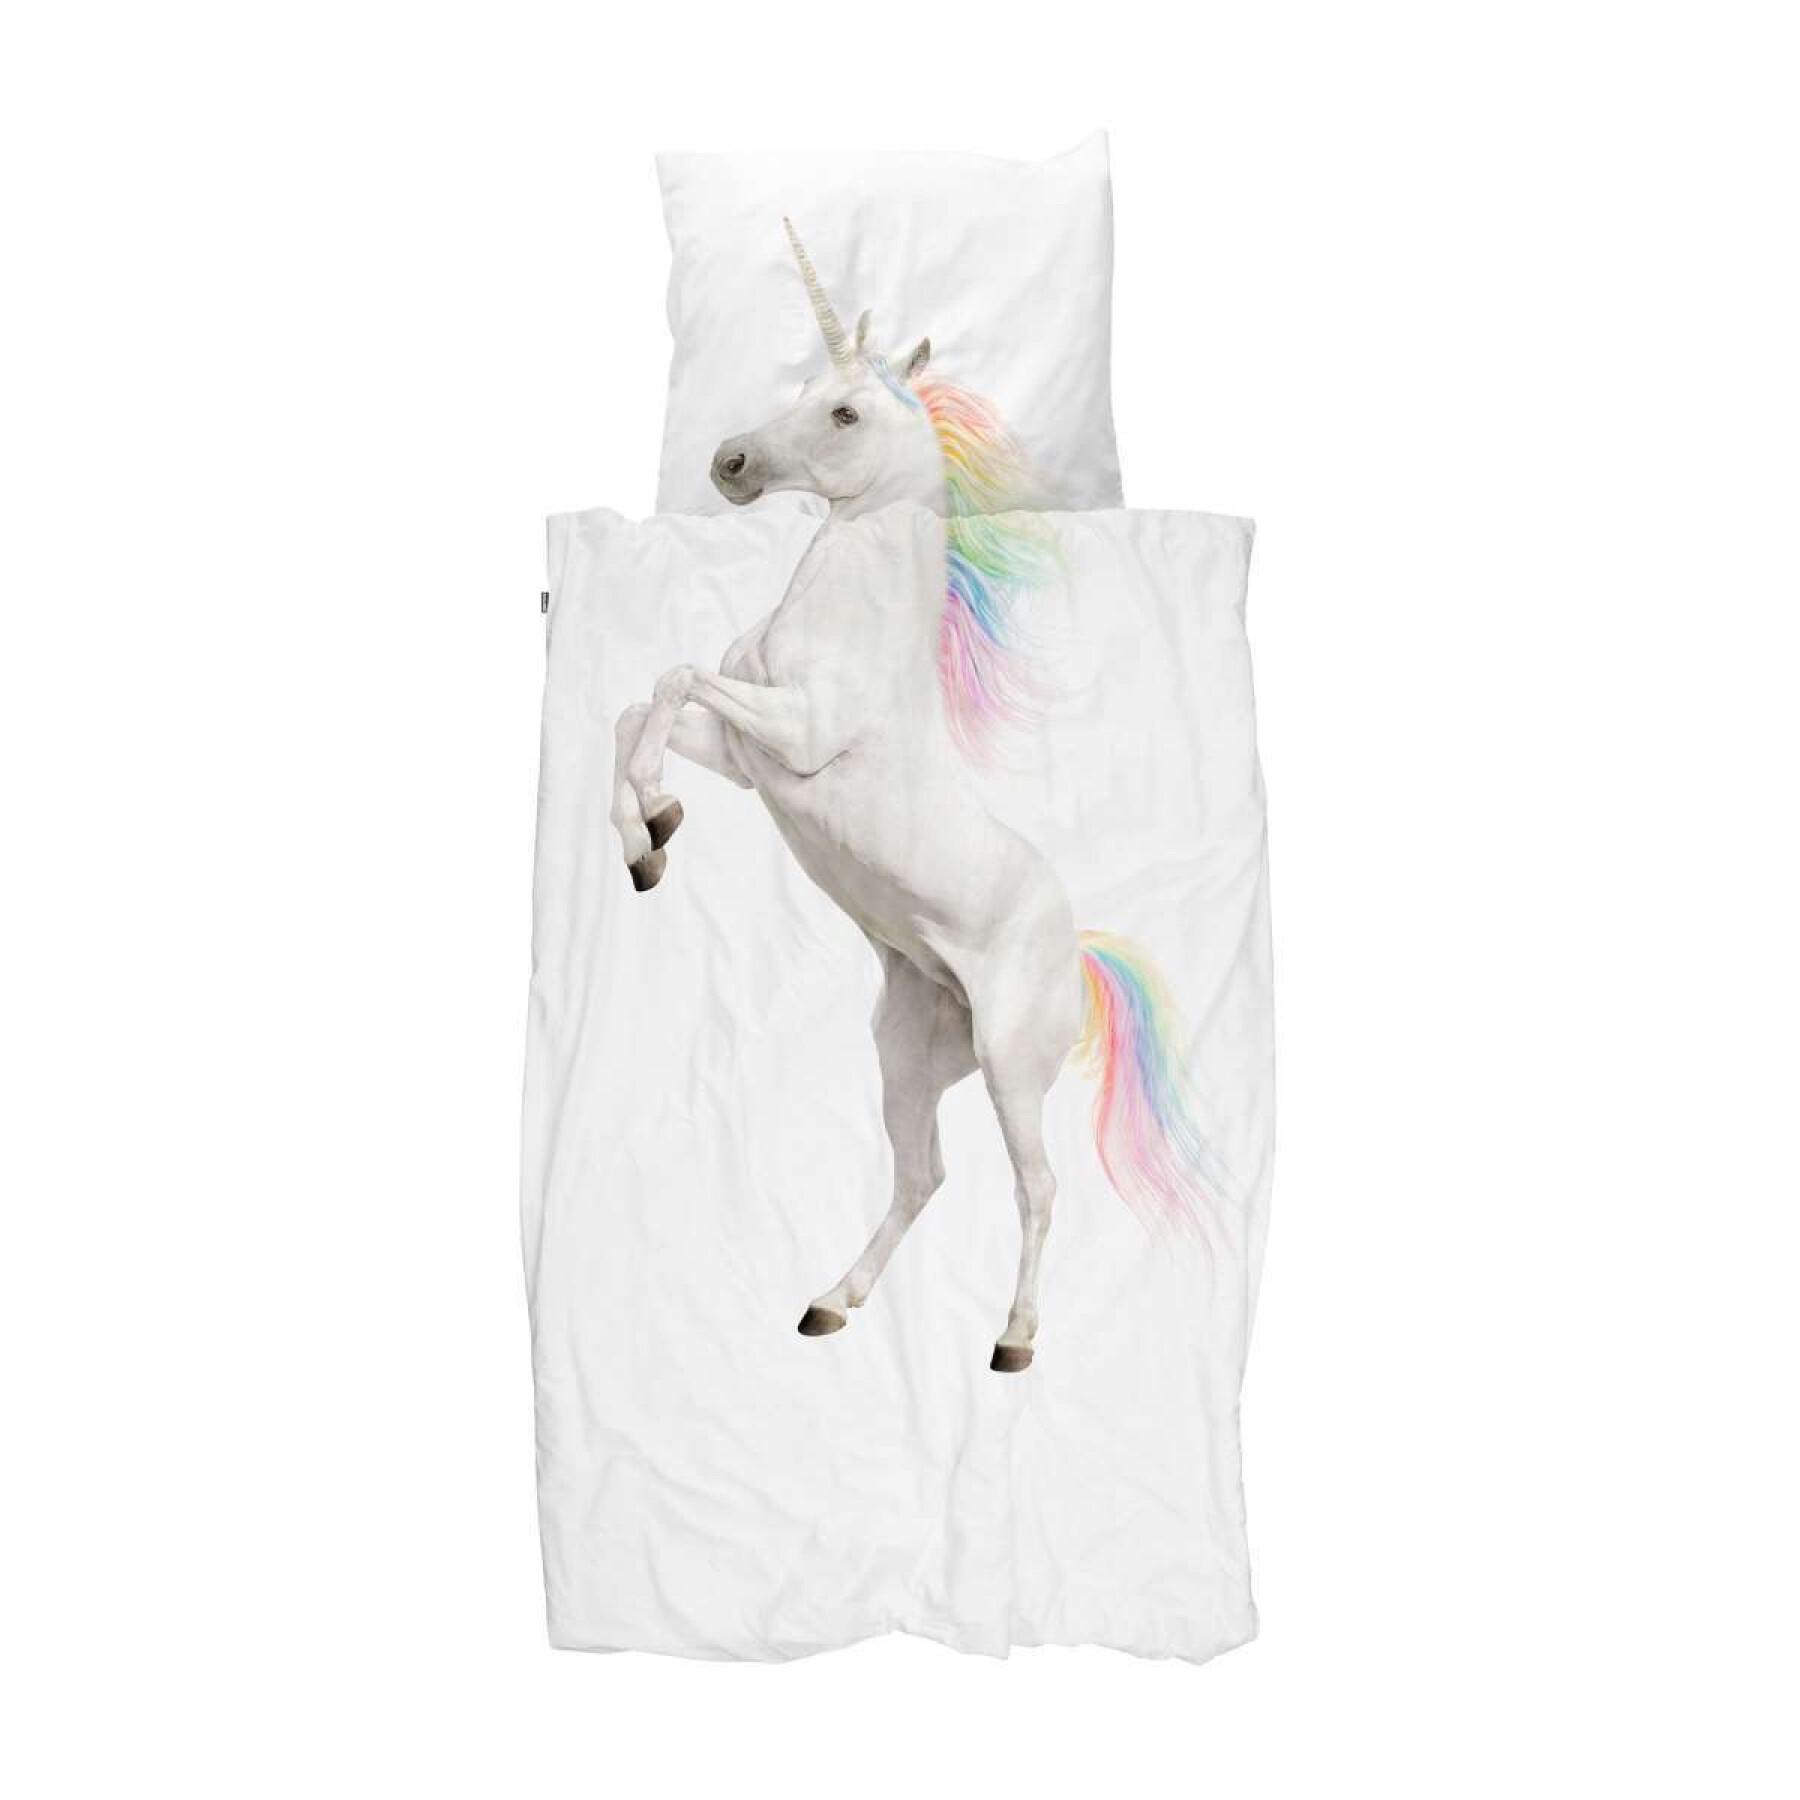 Funda nórdica y funda de almohada para niños Snurk Unicorn